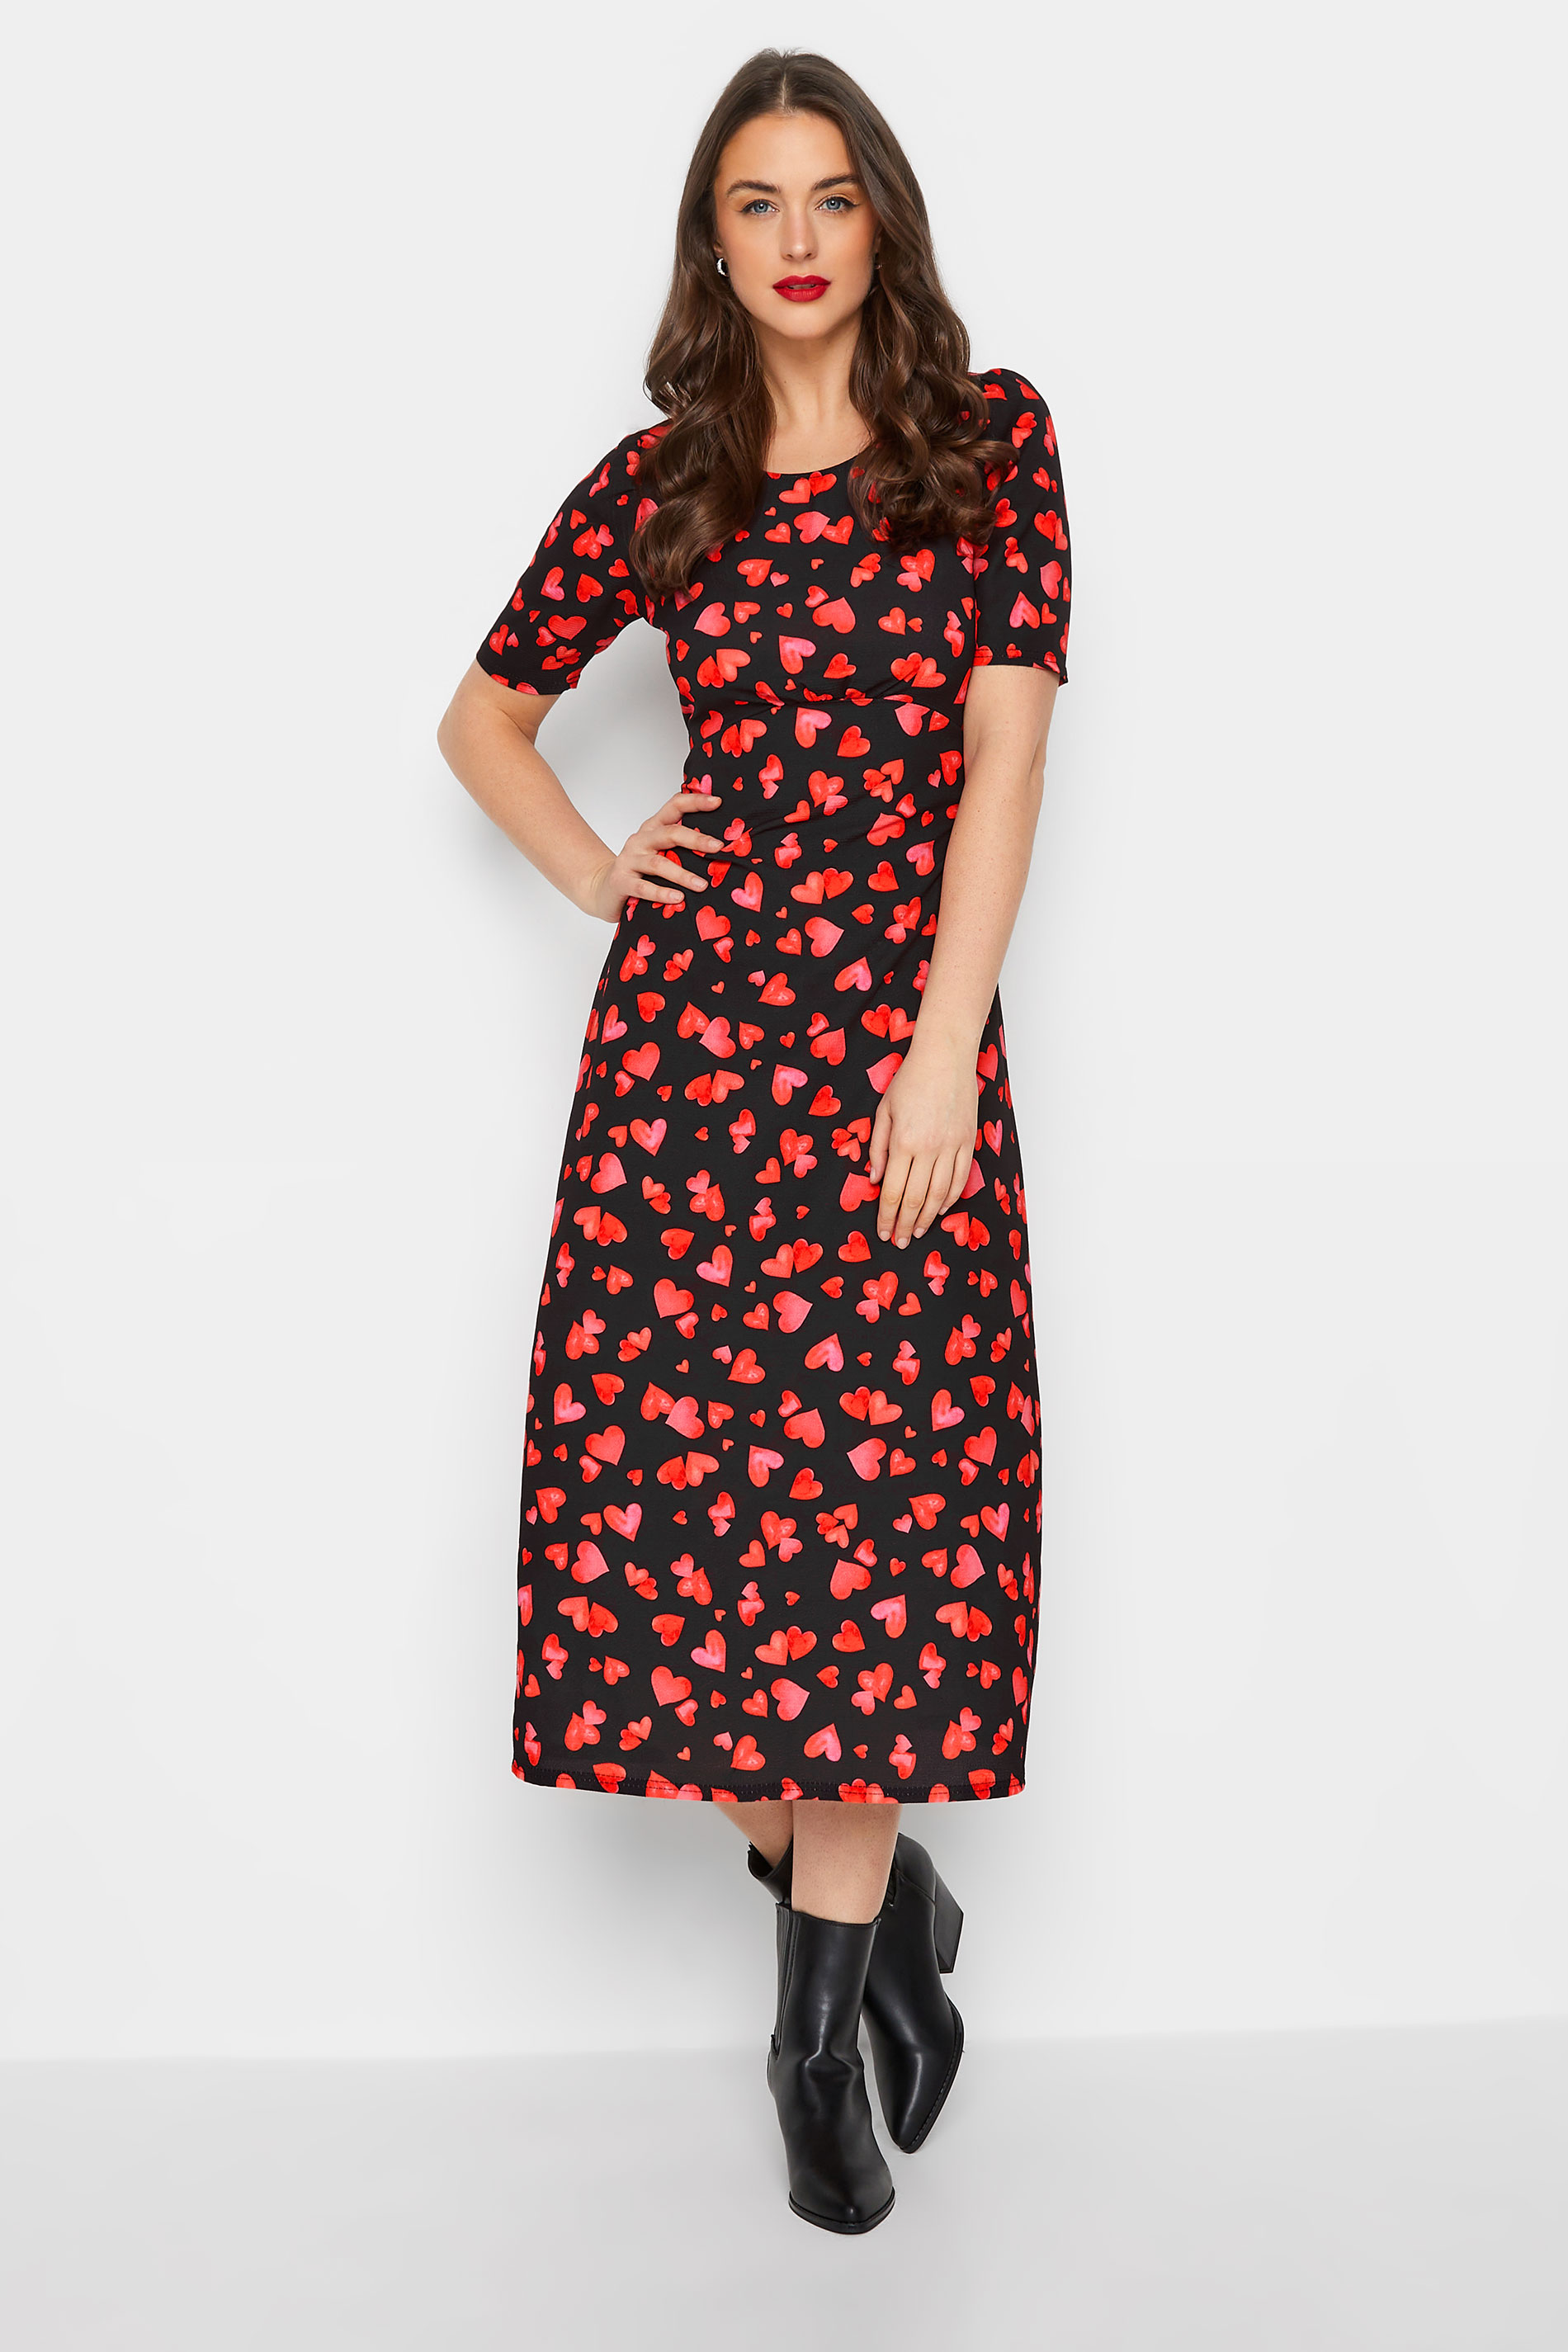 LTS Tall Women's Black Heart Print Midi Dress | Long Tall Sally 1